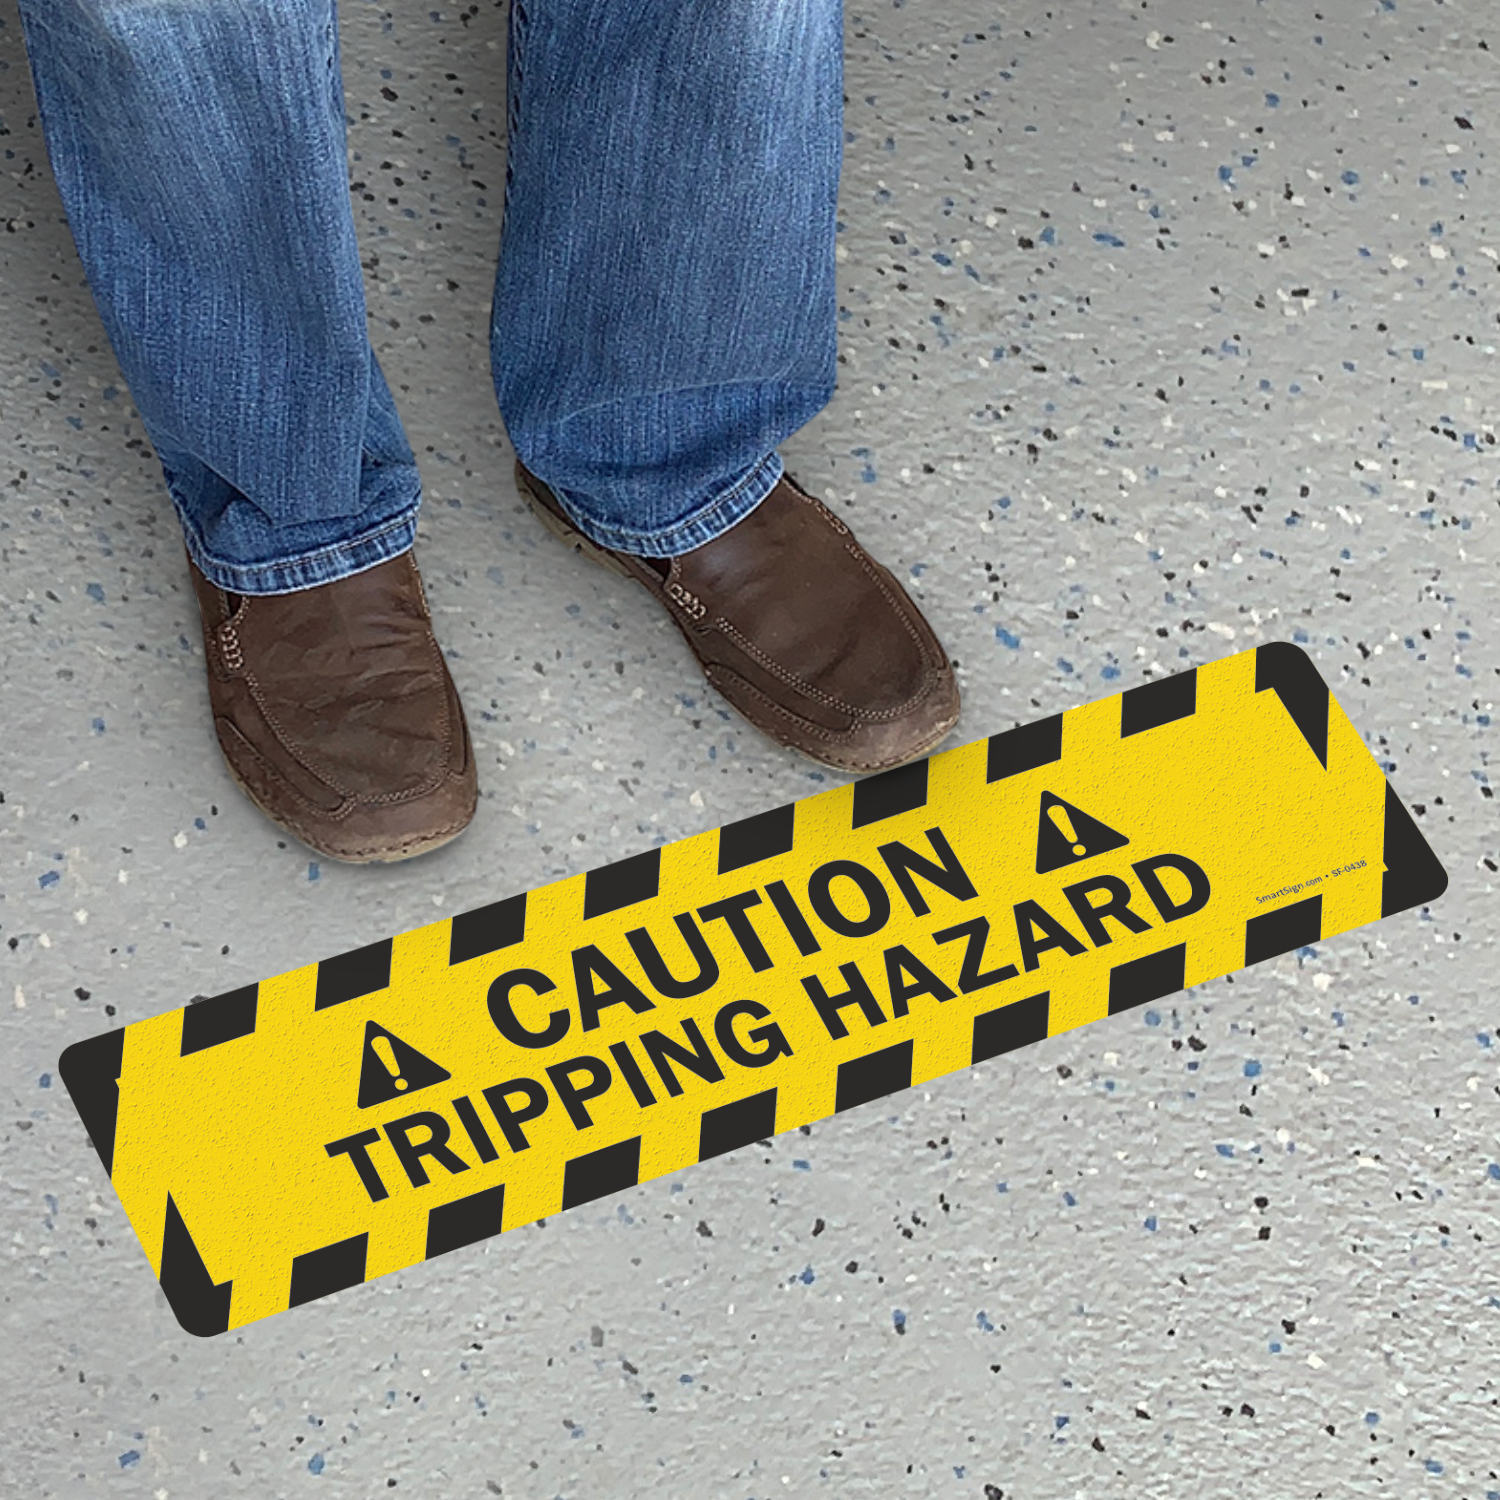 trip or slip hazards